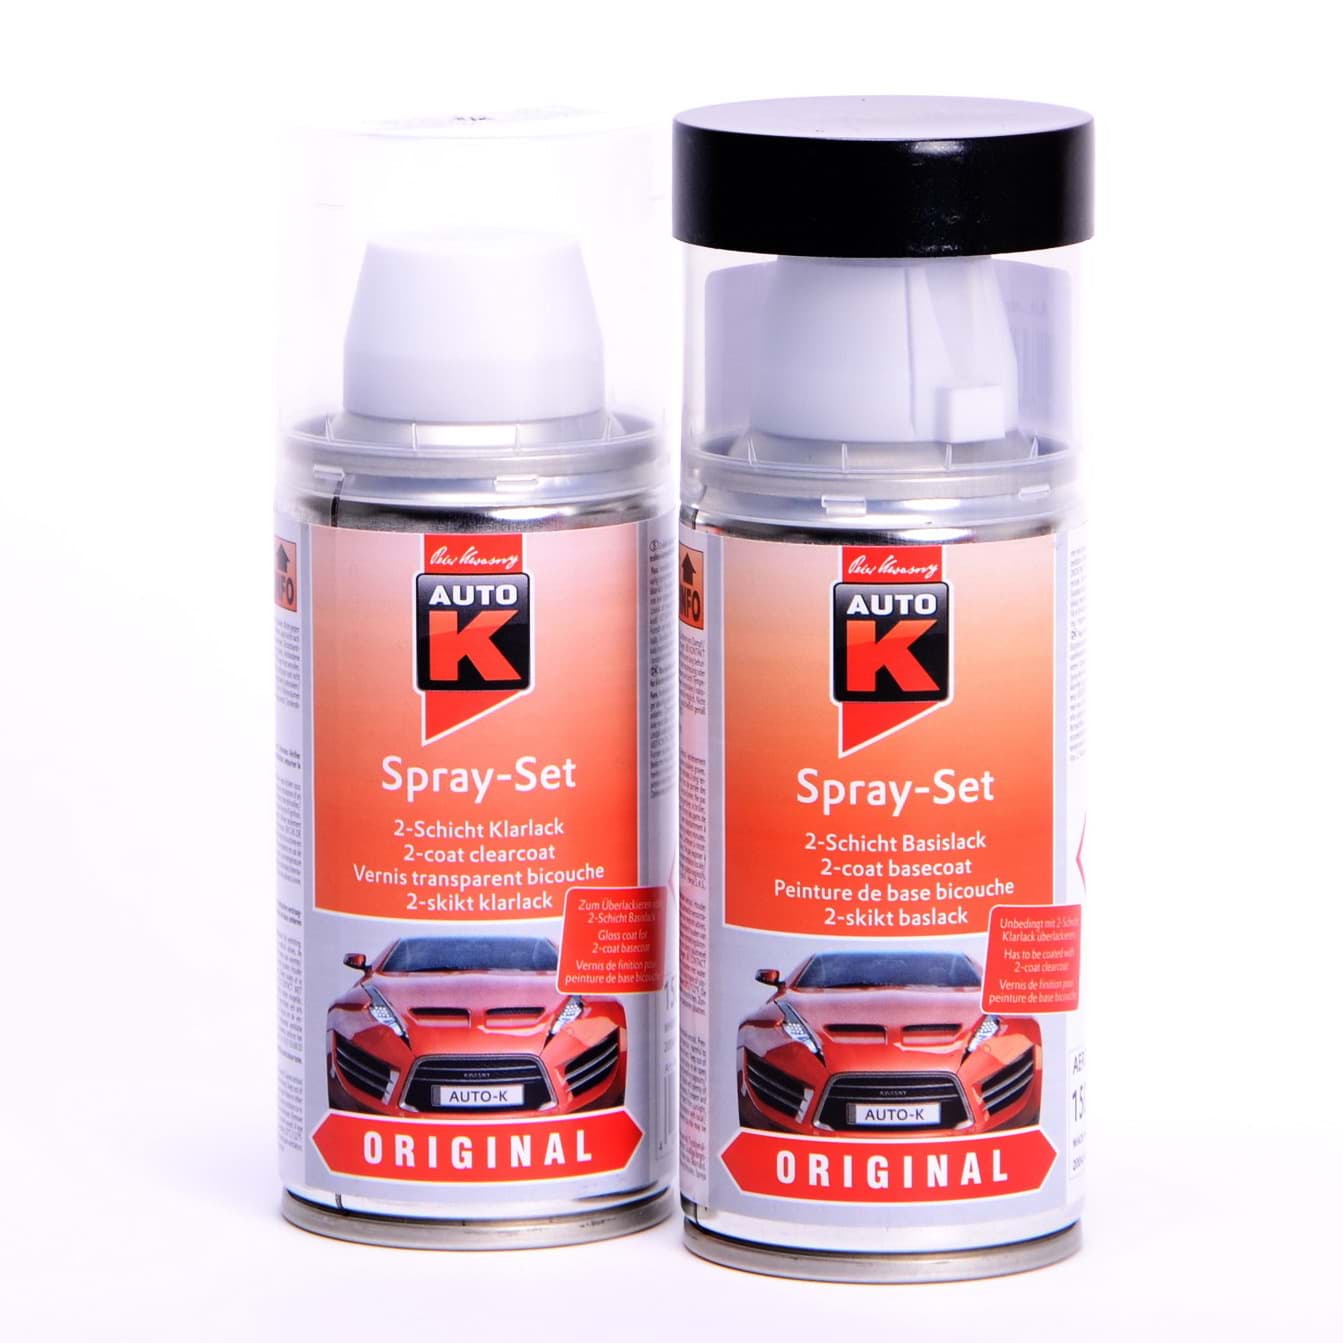 Afbeelding van Auto-K Spray-Set Autolack für Renault 369 Blanc Glacier 43426